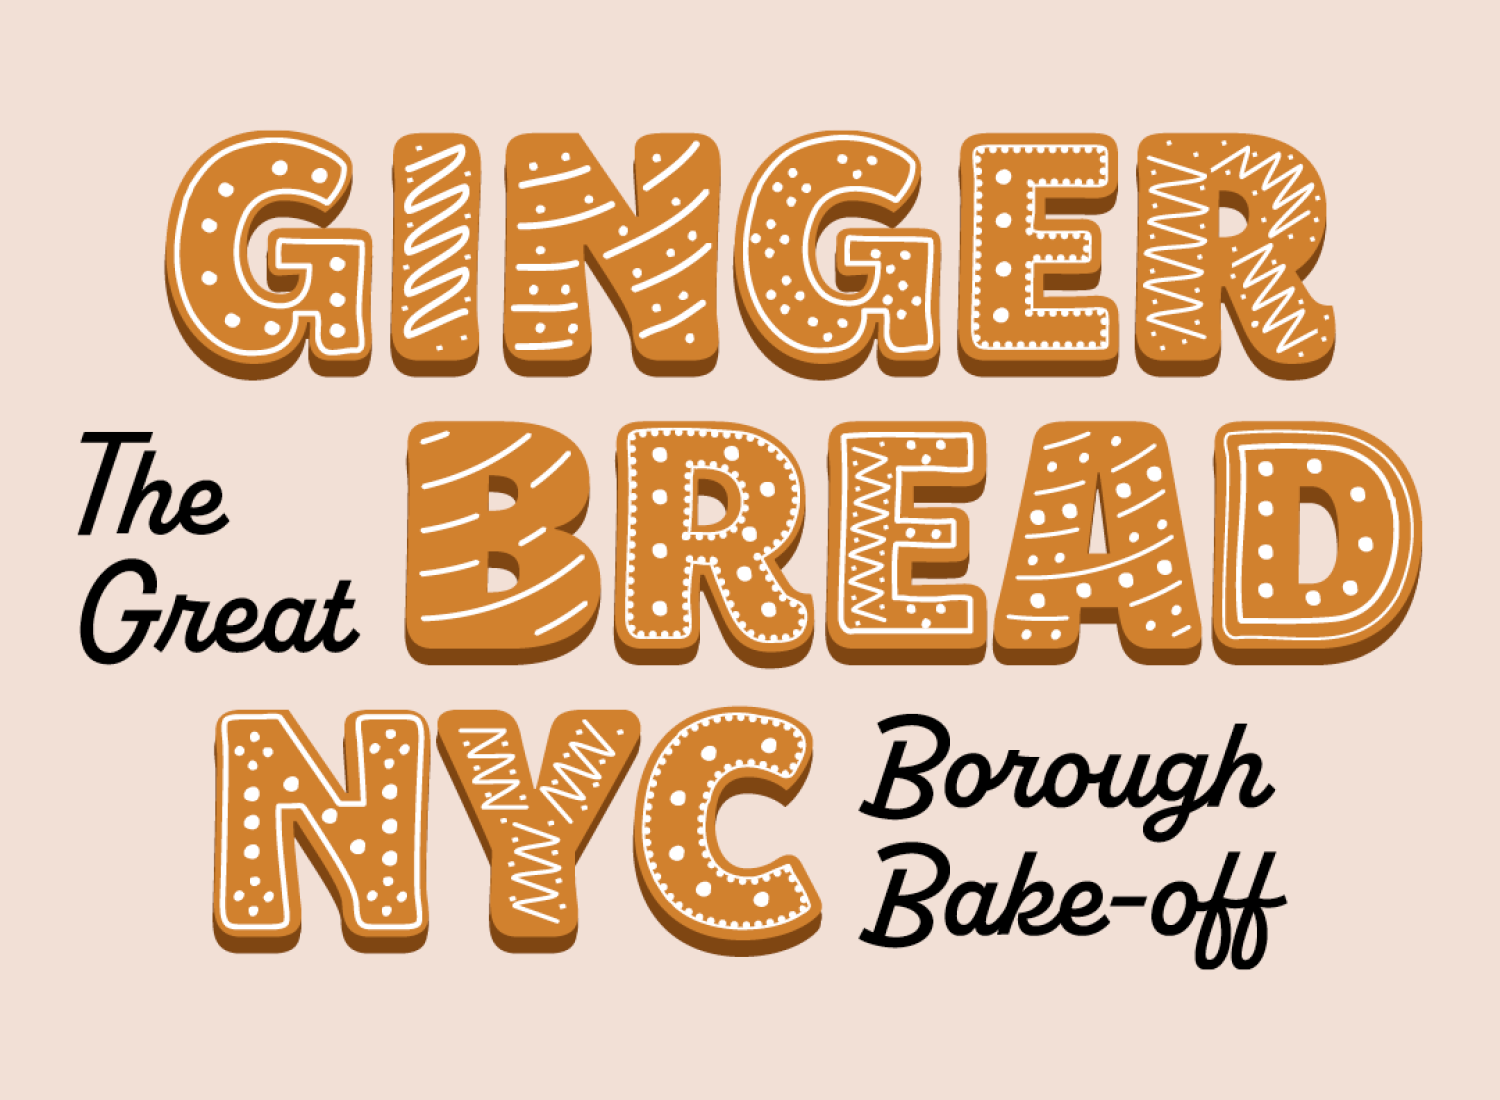 Graphique avec le texte "Gingerbread NYC" en forme de biscuits glacés et "The Great Borough Bake-off : en écriture noire.